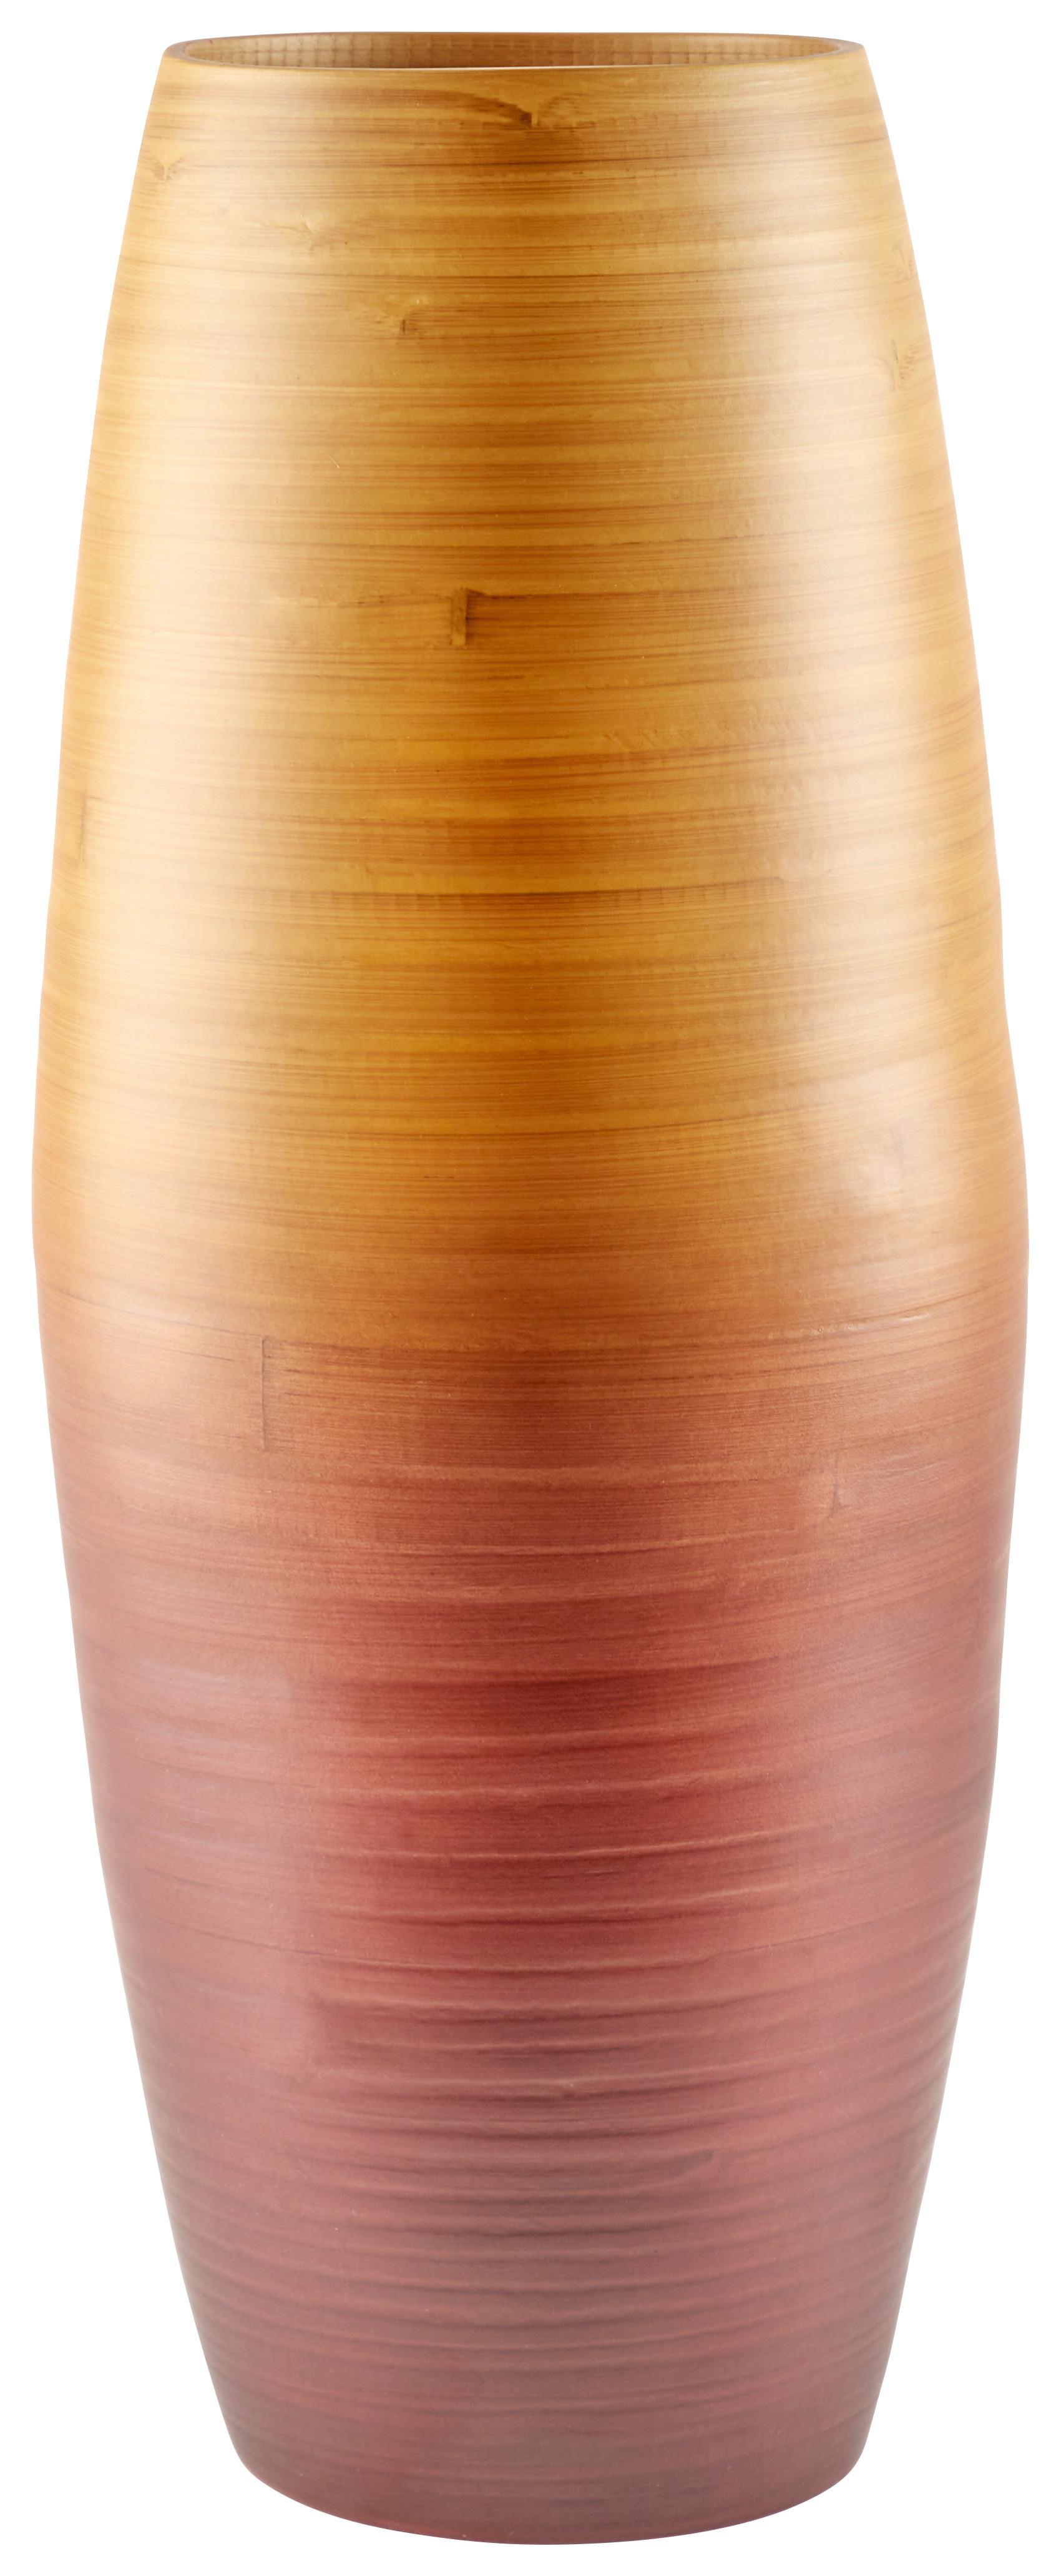 Vase Camille Zylindrisch Bambus Braun/Gelb H: 47 cm - Gelb/Braun, MODERN, Naturmaterialien (19/47cm) - James Wood